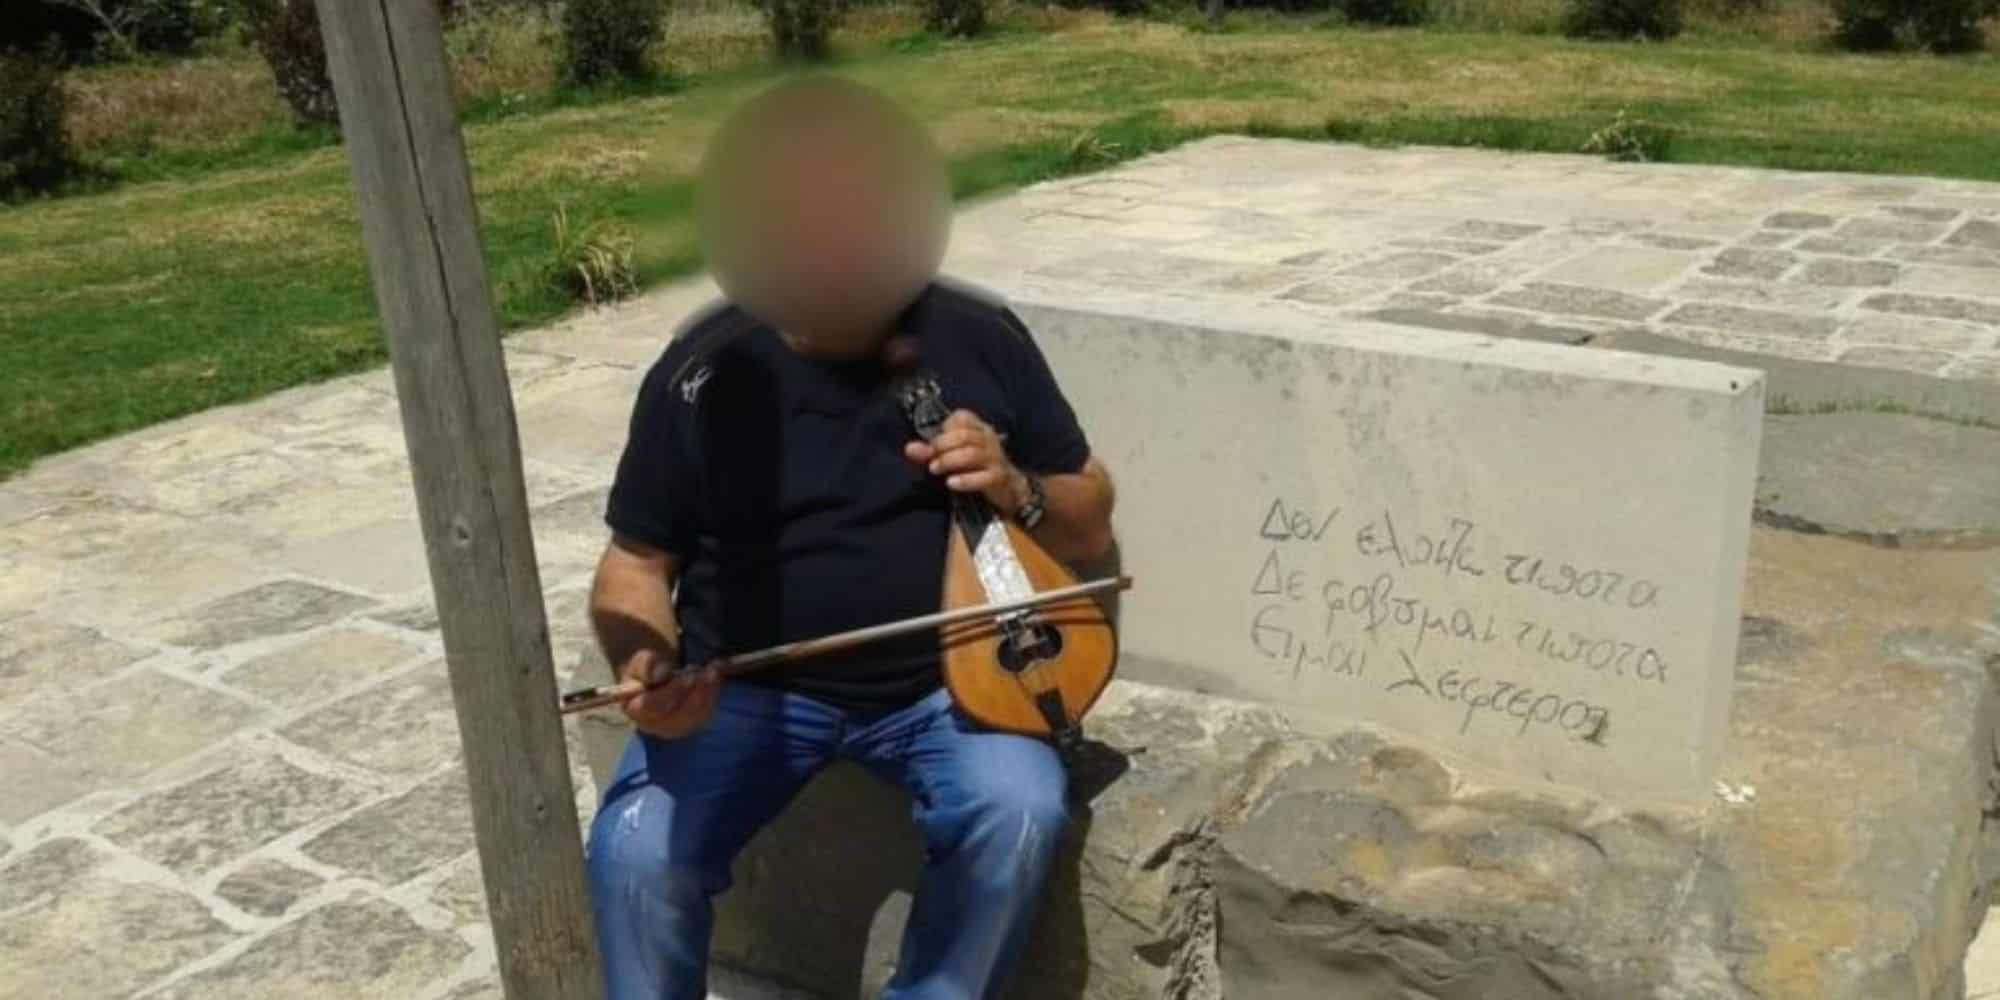 Ο γνωστός λιράρης που κατηγορείται για τον βιασμό του ανήλικου στην Κρήτη